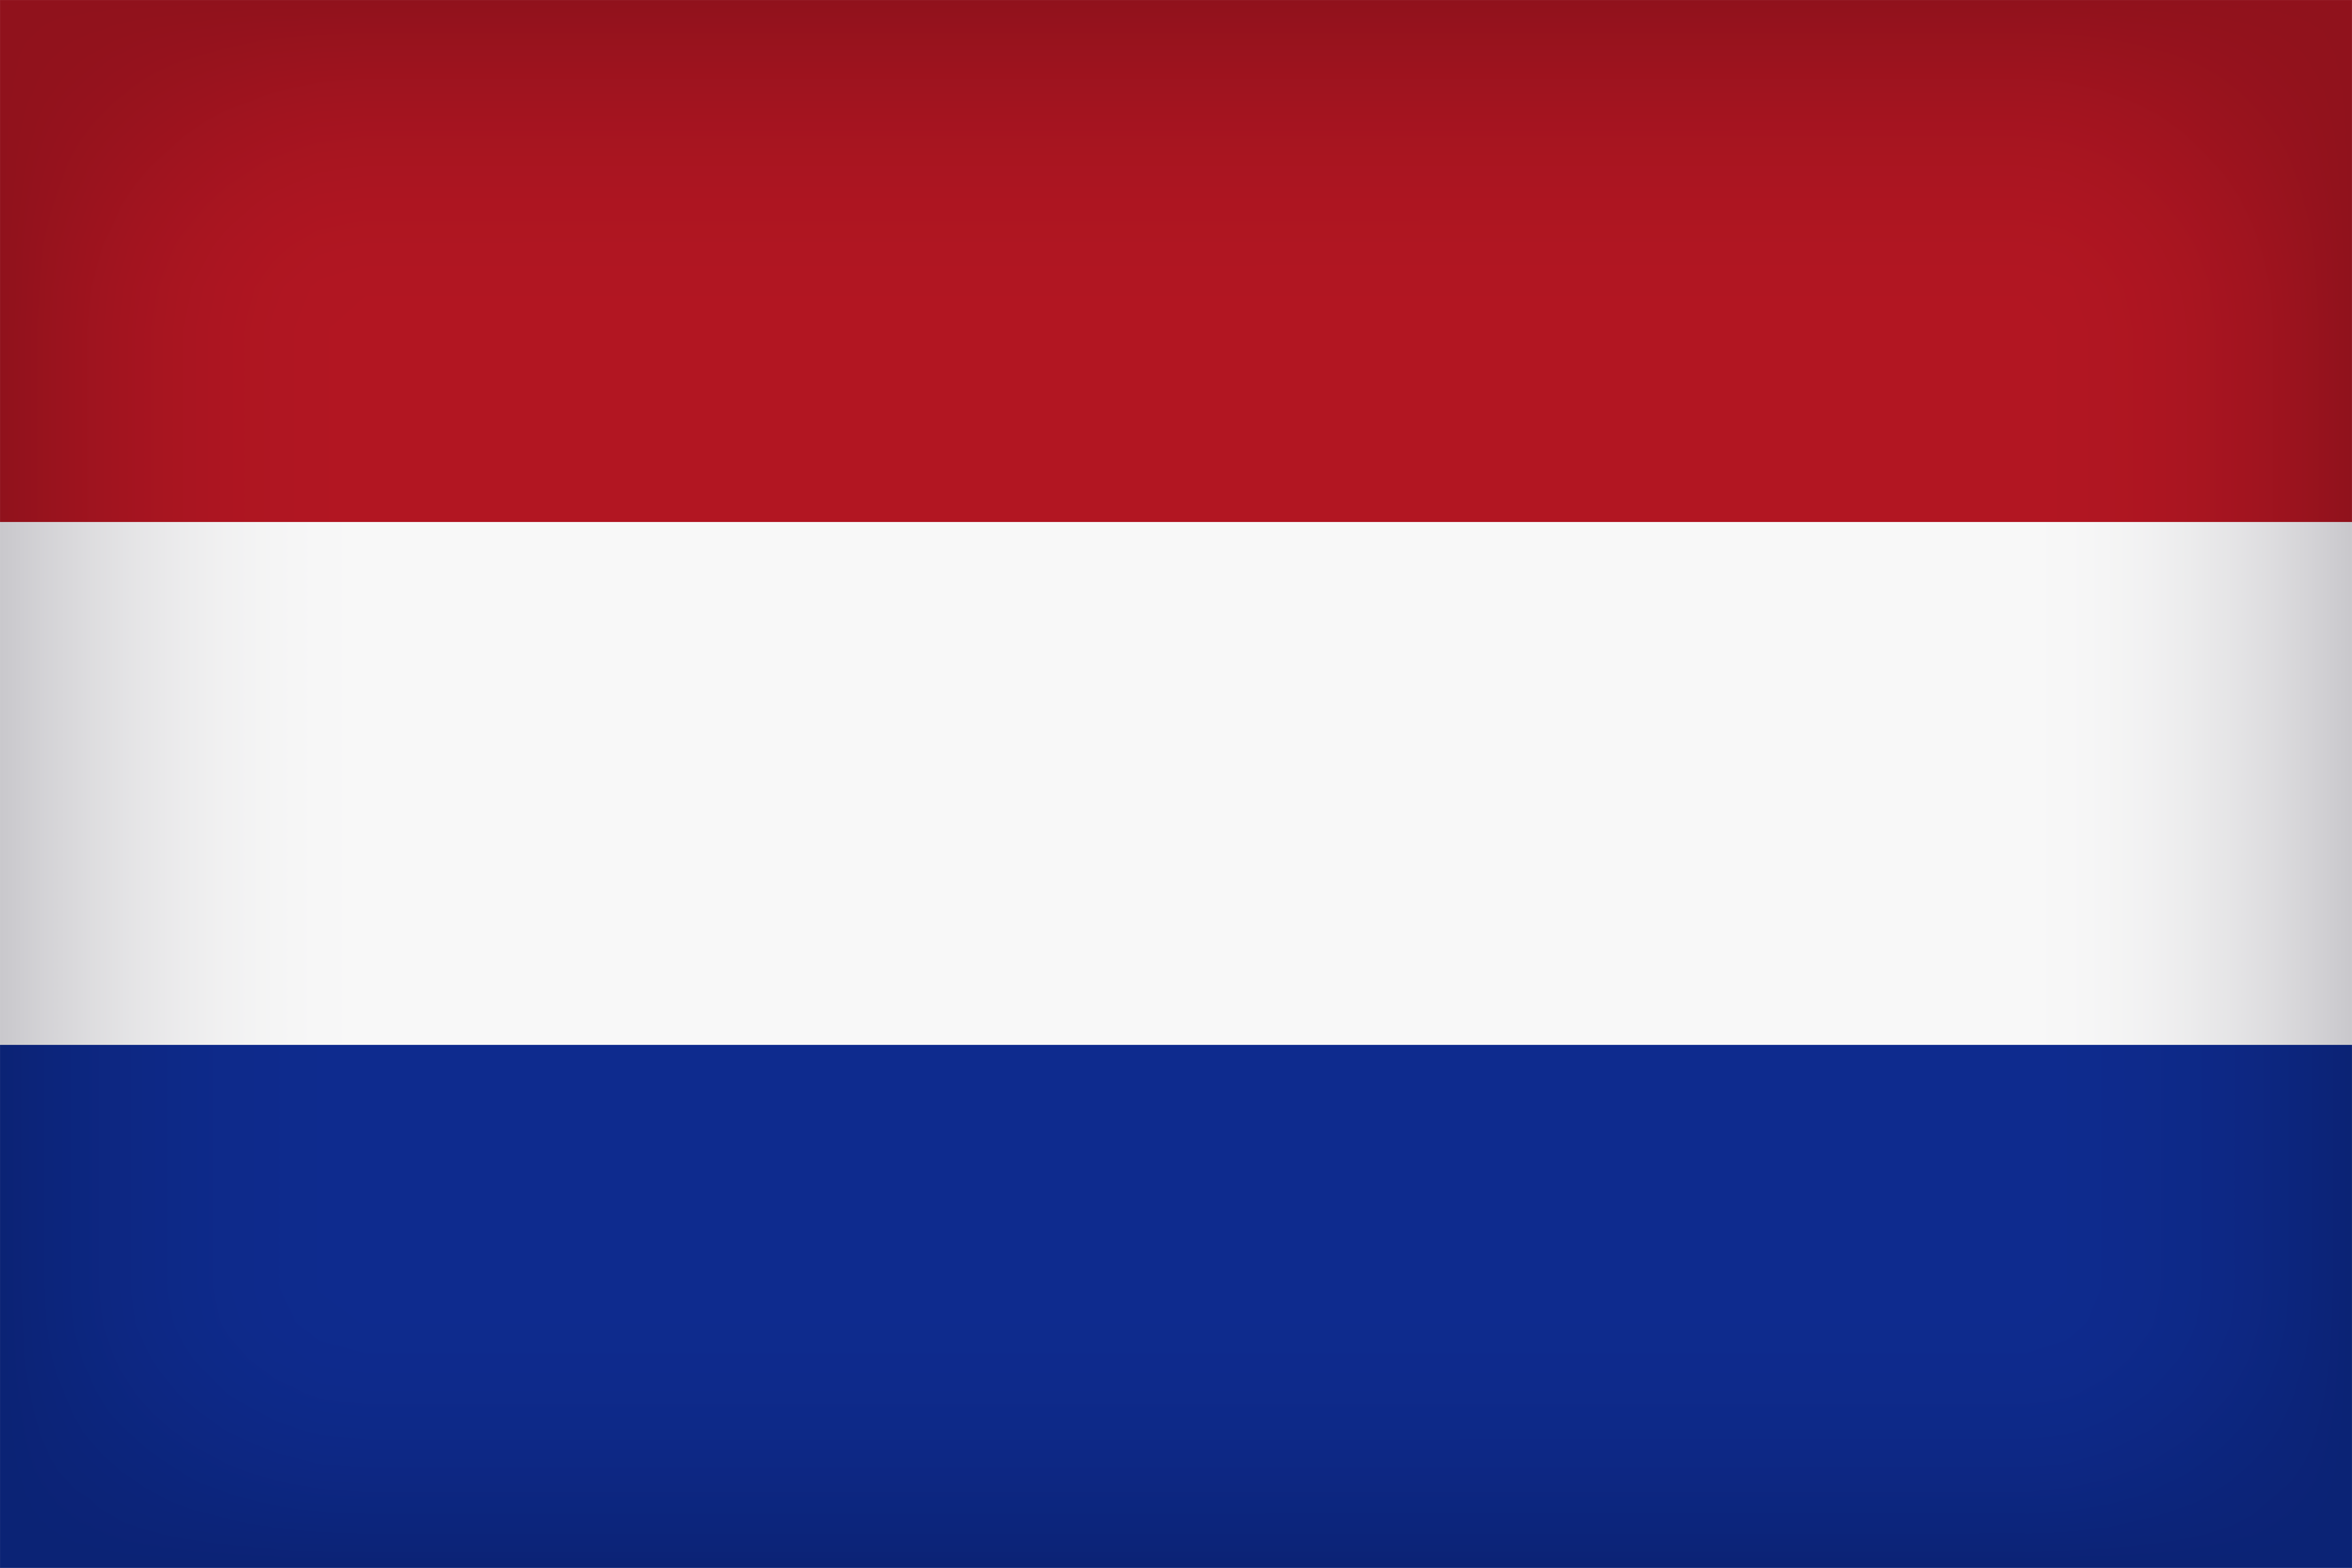 clip art dutch flag - photo #37